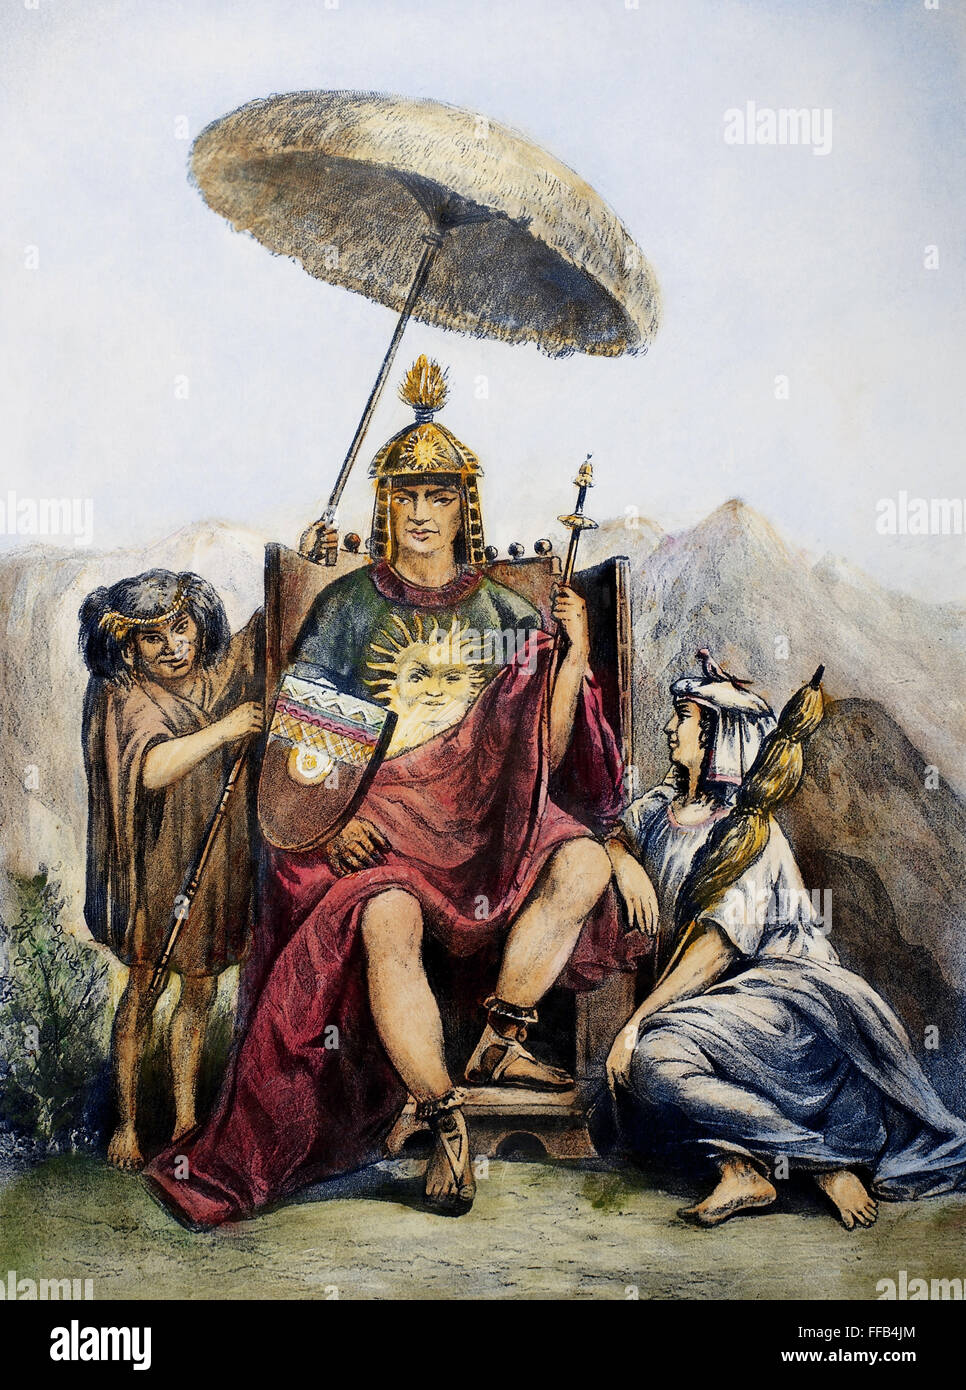 PERU: INKA KÖNIG. / nAn Inka König von Peru auf seinem Thron mit seiner Frau und Zwerg. Photogravure, Ende des 19. Jahrhunderts, nach einem Gemälde von ╔douard Riou. Stockfoto